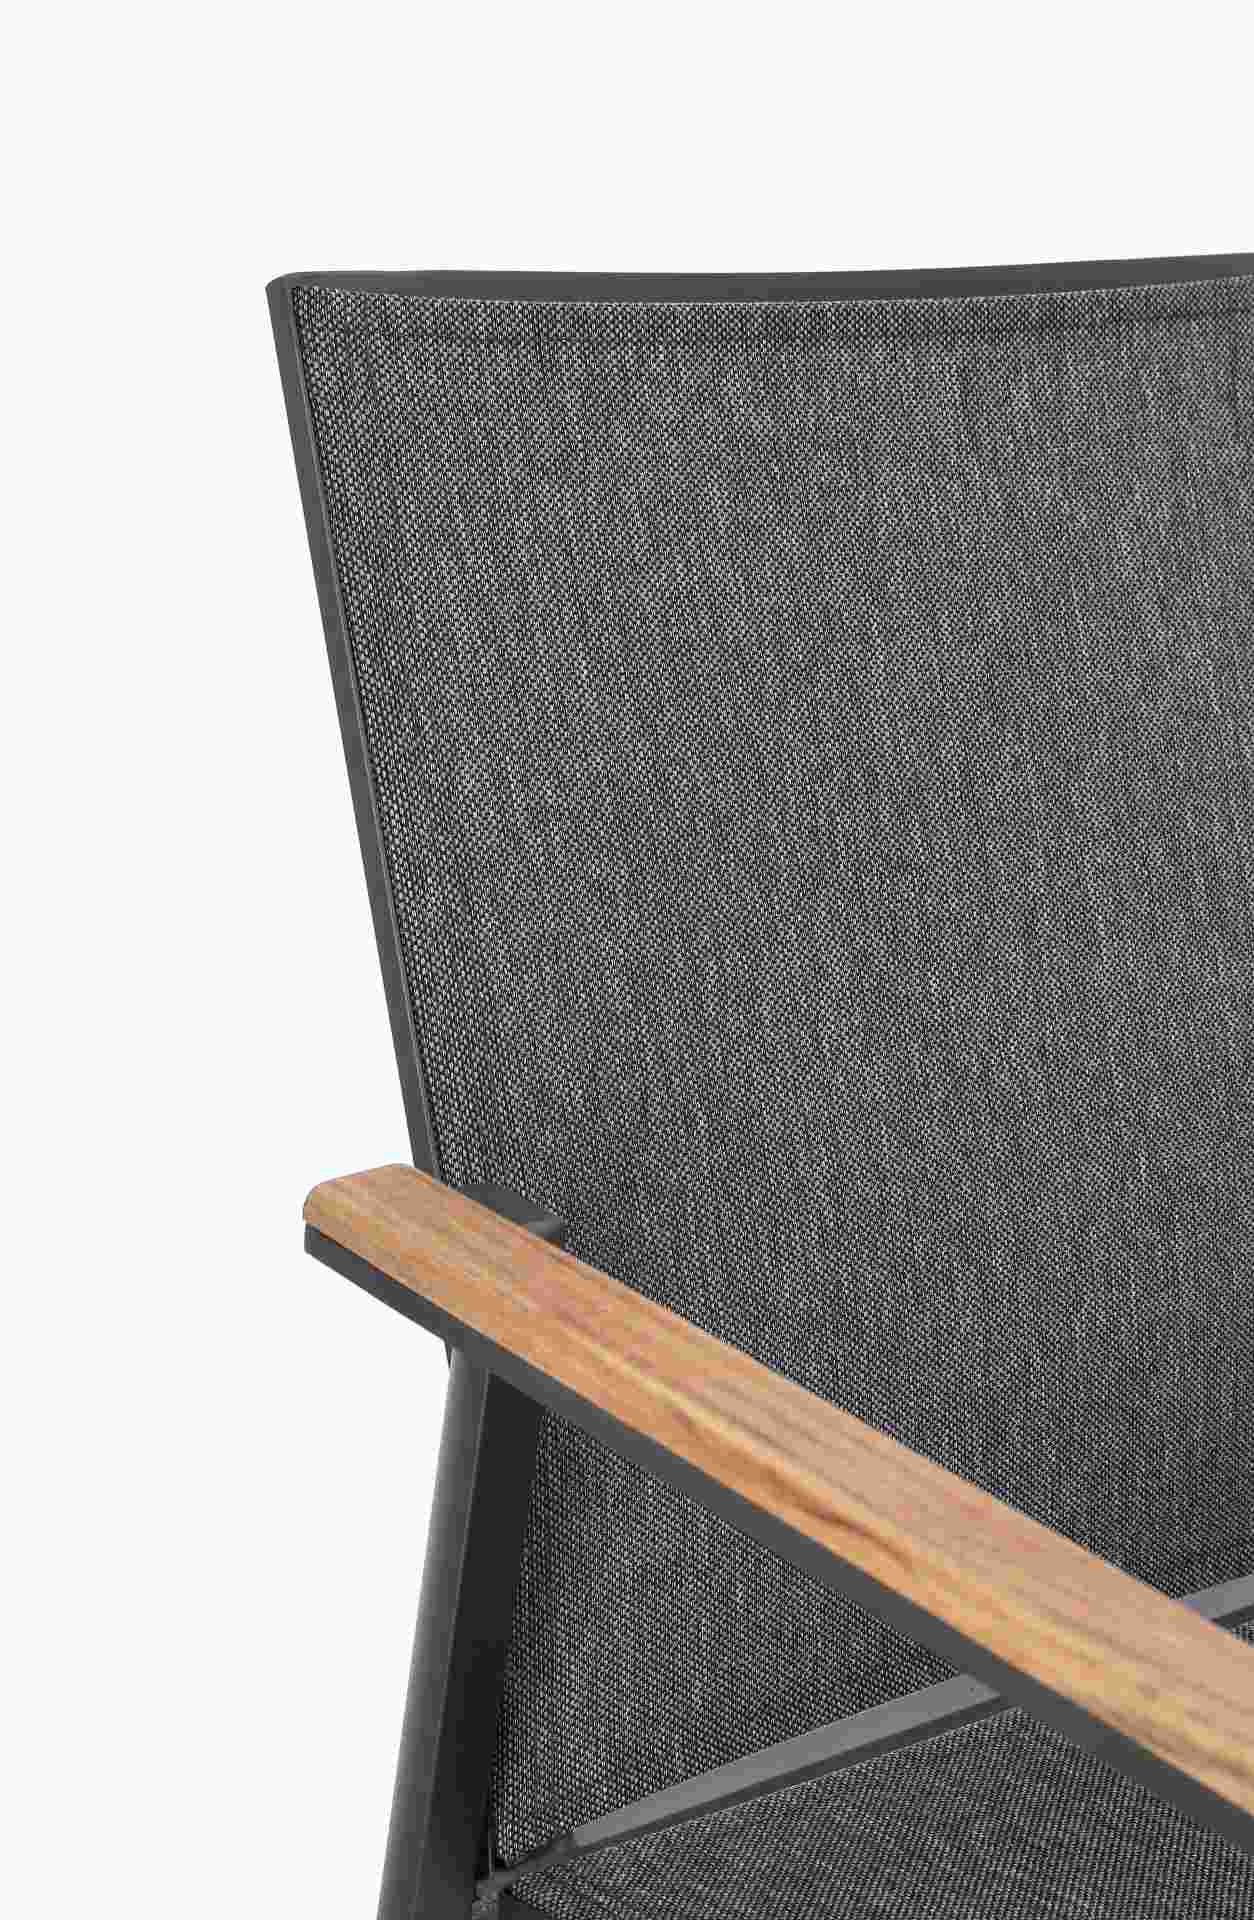 Der Gartenstuhl Cameron überzeugt mit seinem modernen Design. Gefertigt wurde er aus Textilene, welcher einen Anthrazit Farbton besitzt. Das Gestell ist aus Aluminium und hat eine Anthrazit Farbe. Der Stuhl verfügt über eine Sitzhöhe von 44 cm und ist für